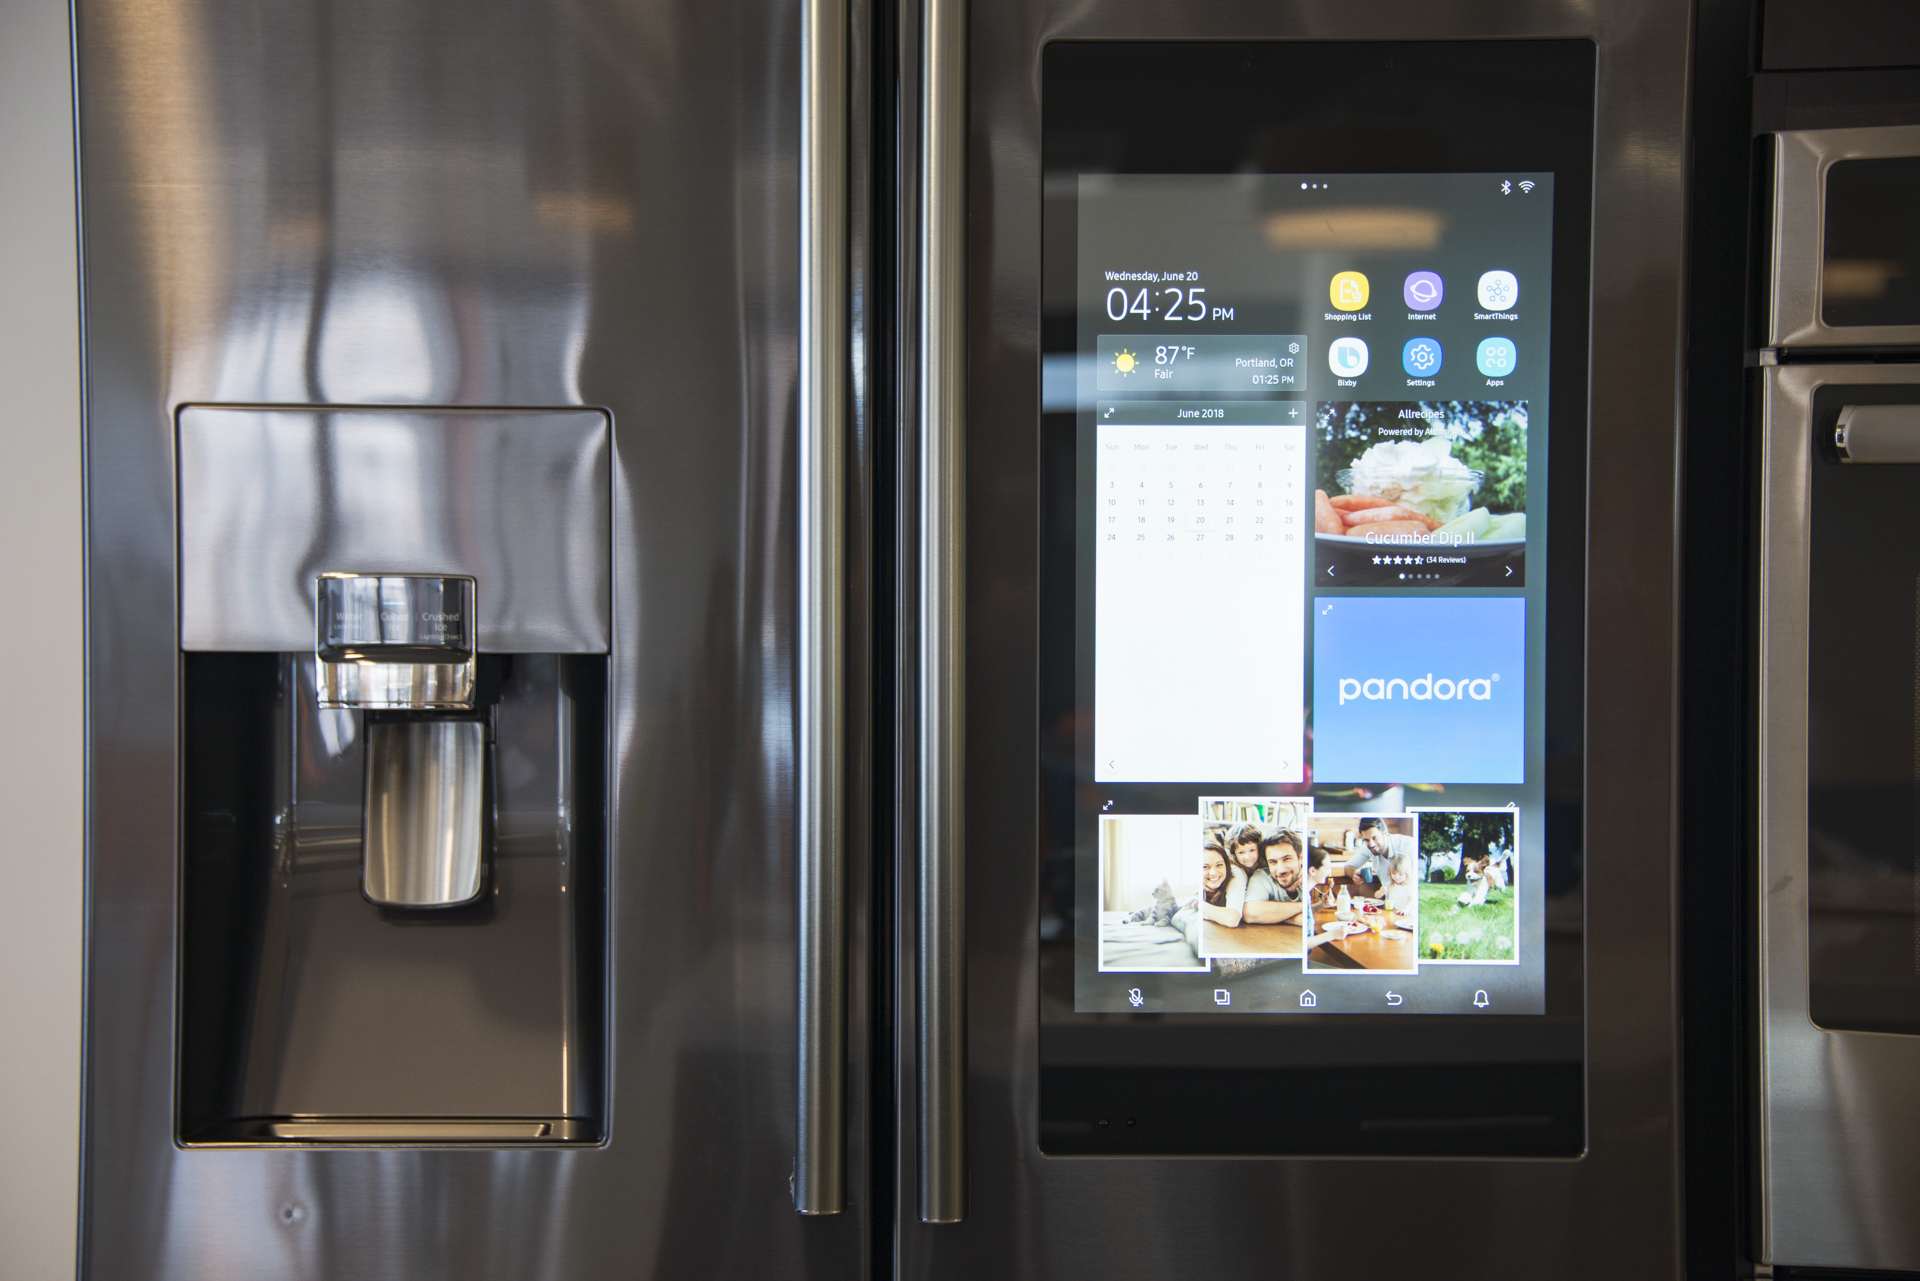 Samsung 25 cu. ft. 3-Door French Door Counter Depth Smart Refrigerator with  Family Hub Stainless Steel RF27CG5900SR/AA - Best Buy